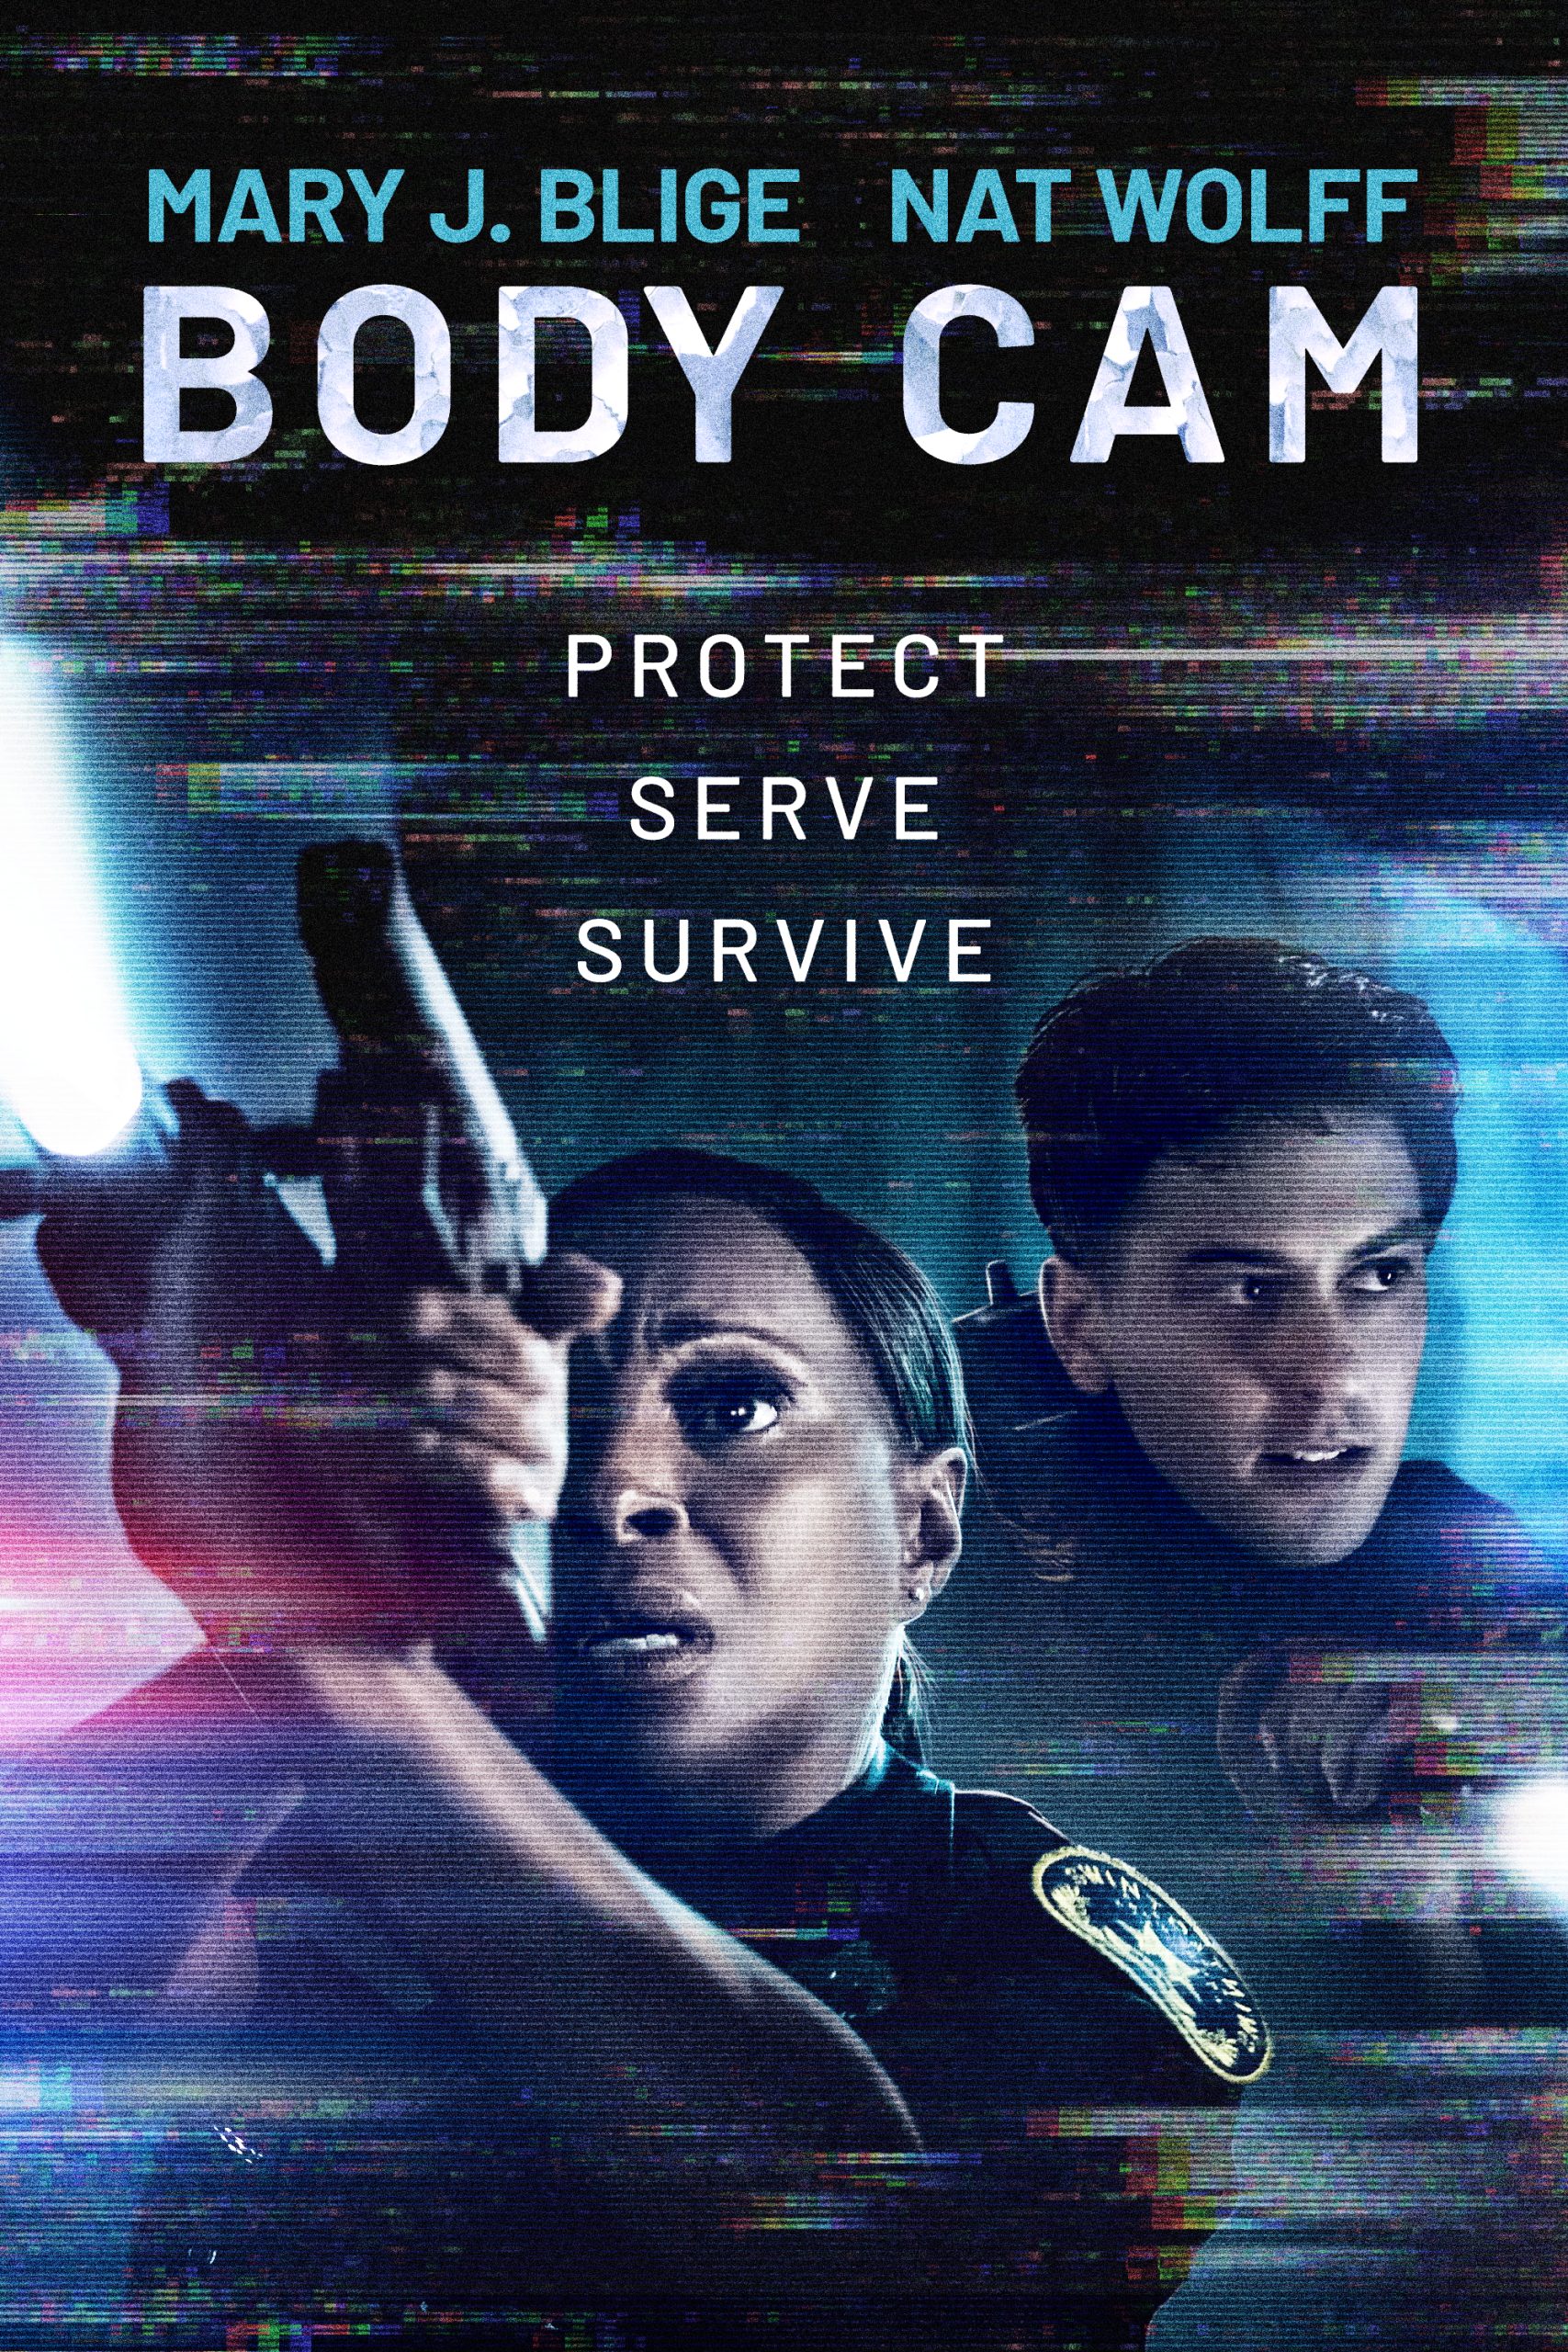 Body Cam (2020) Mary J. Blige